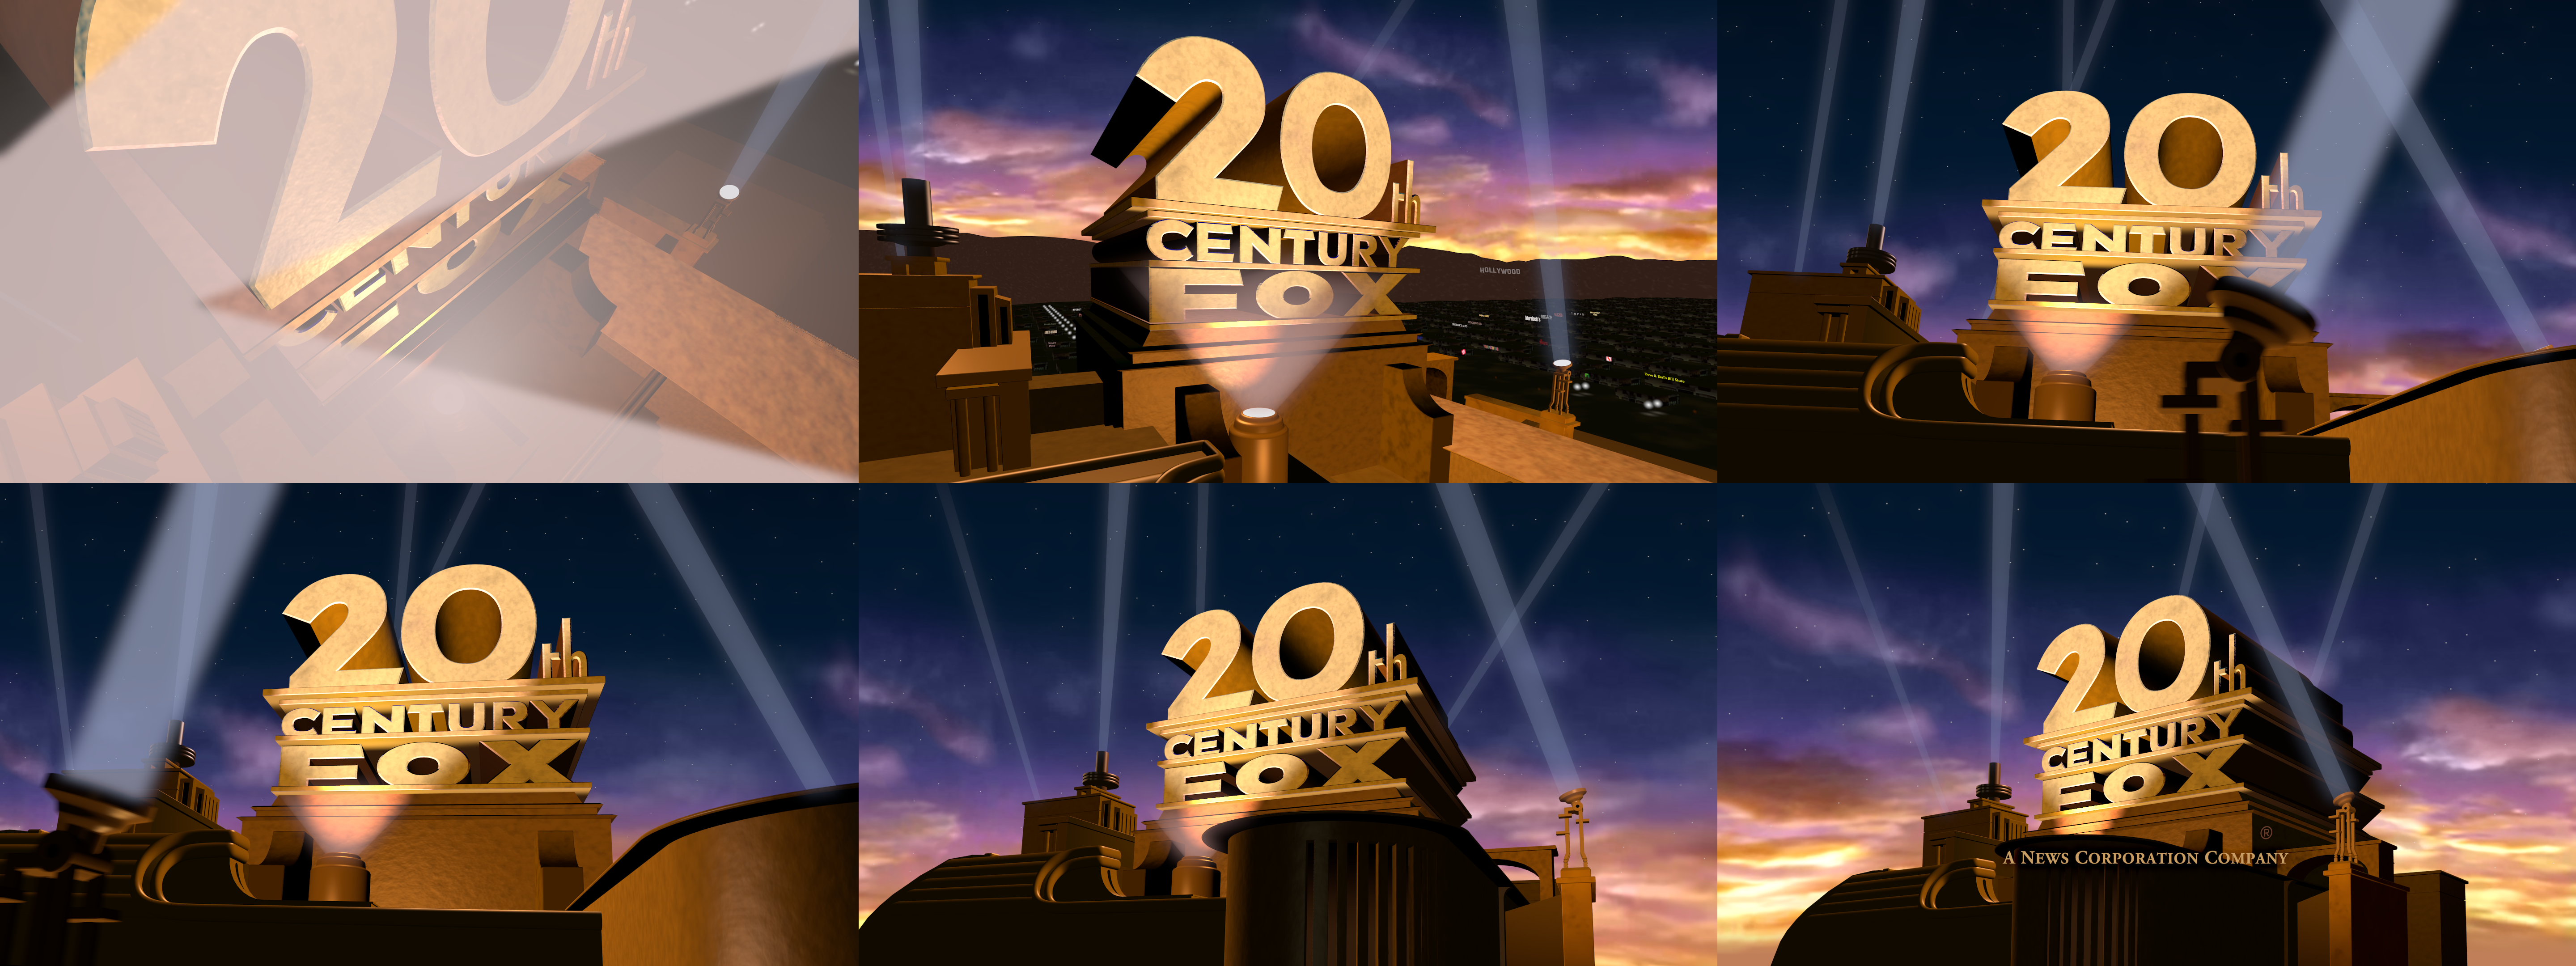 20th Century Fox 1994-2010 logo by LogoManSeva on DeviantArt